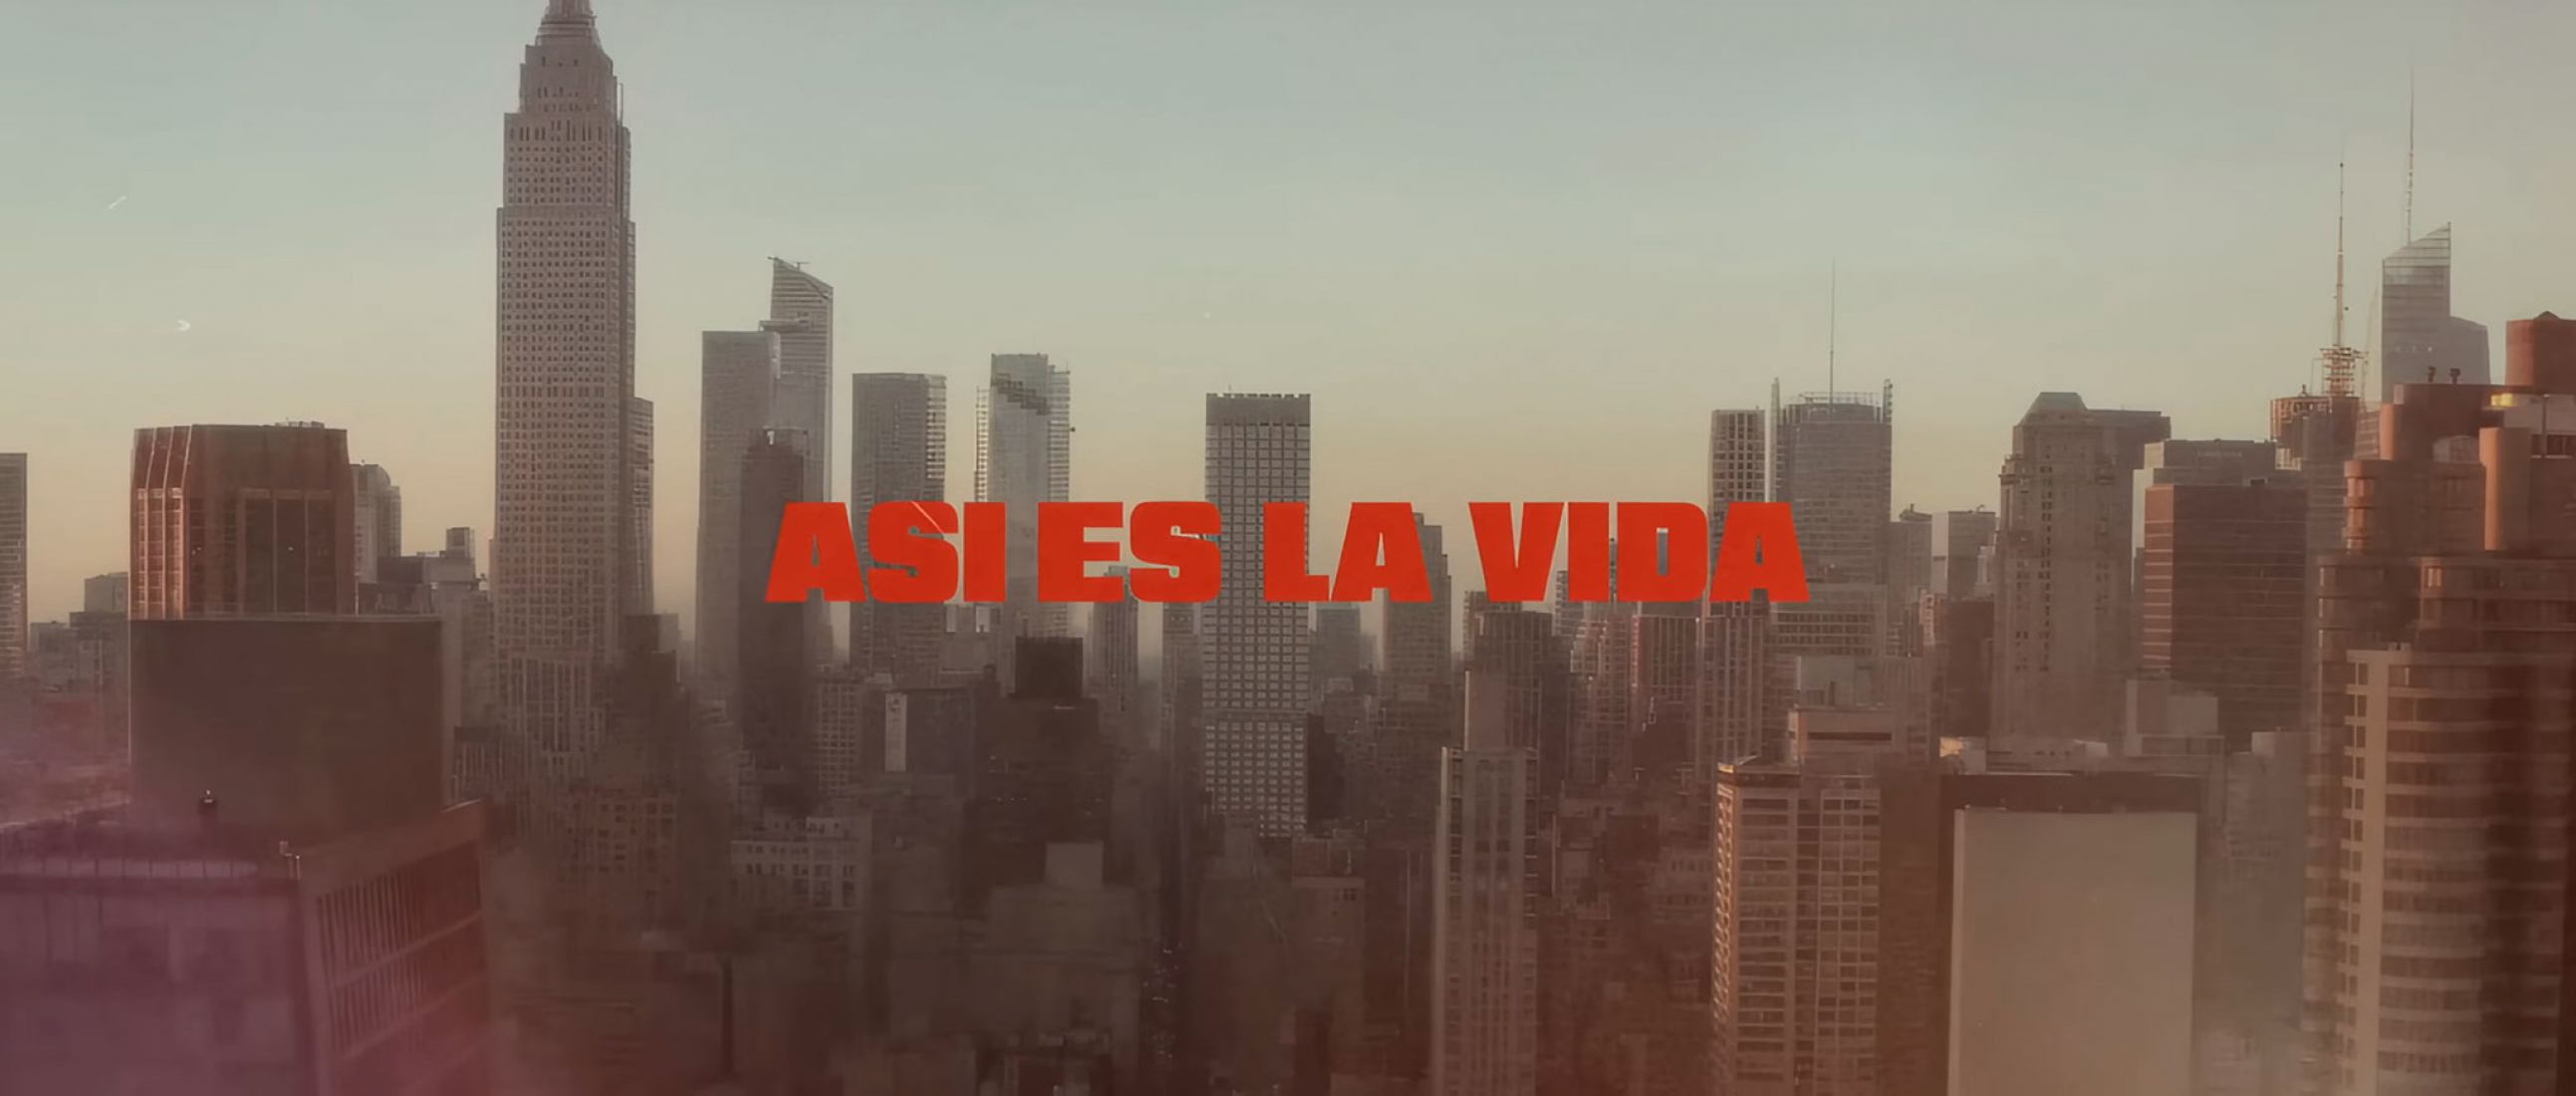 Así es la vida by Enrique Iglesias and María Becerra.